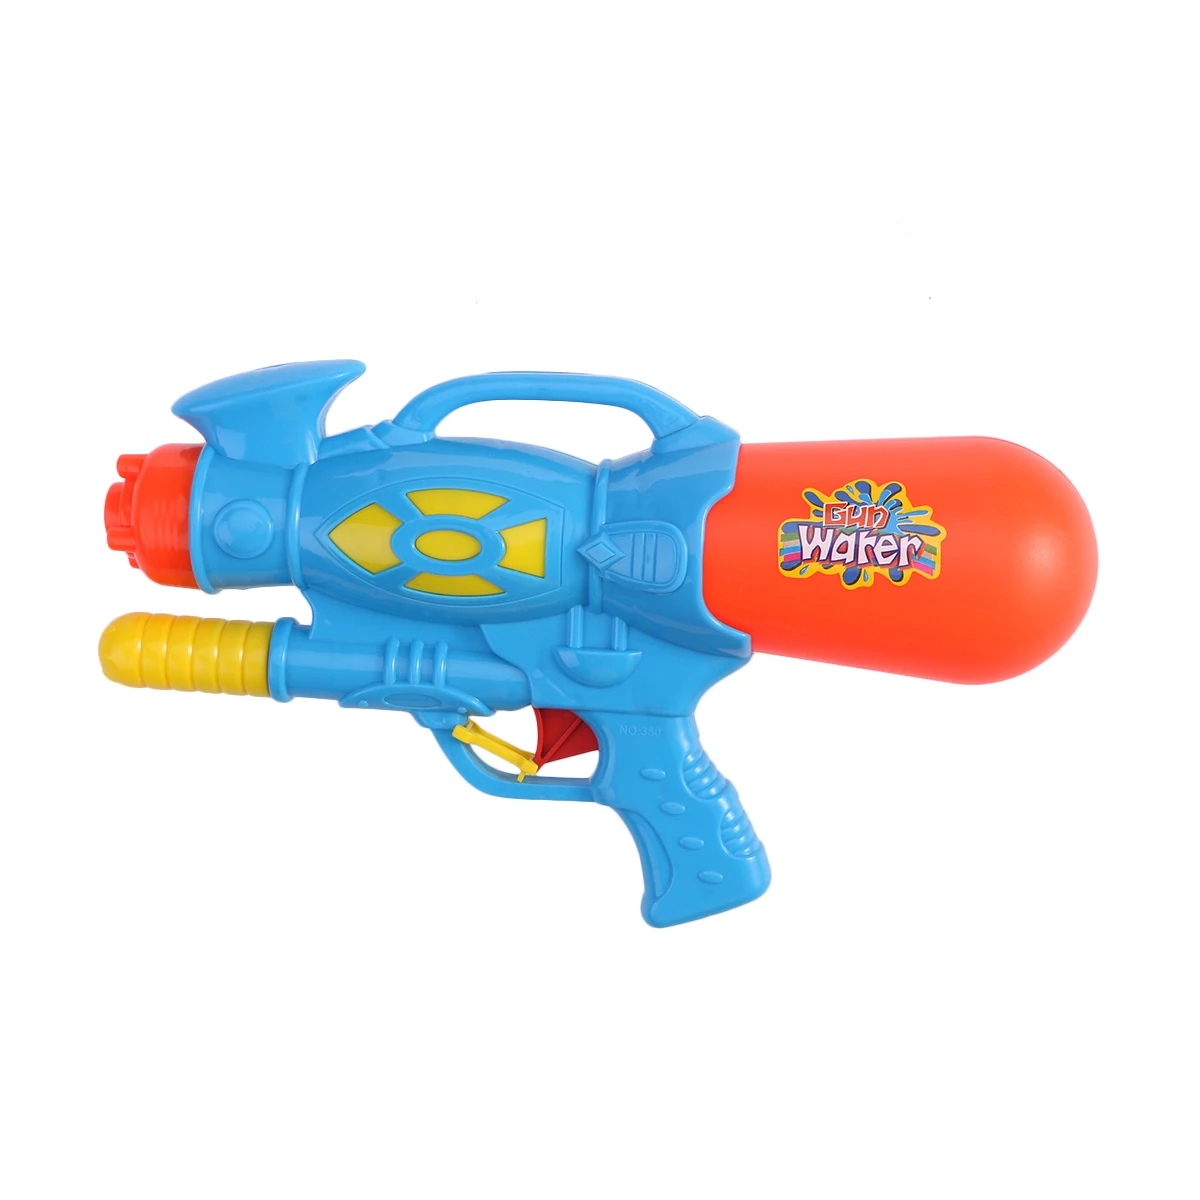 Водяная игрушка водный брызг Летняя Пляжная уличная игрушка 30 см синий водяной пистолет игровой подарок для детей